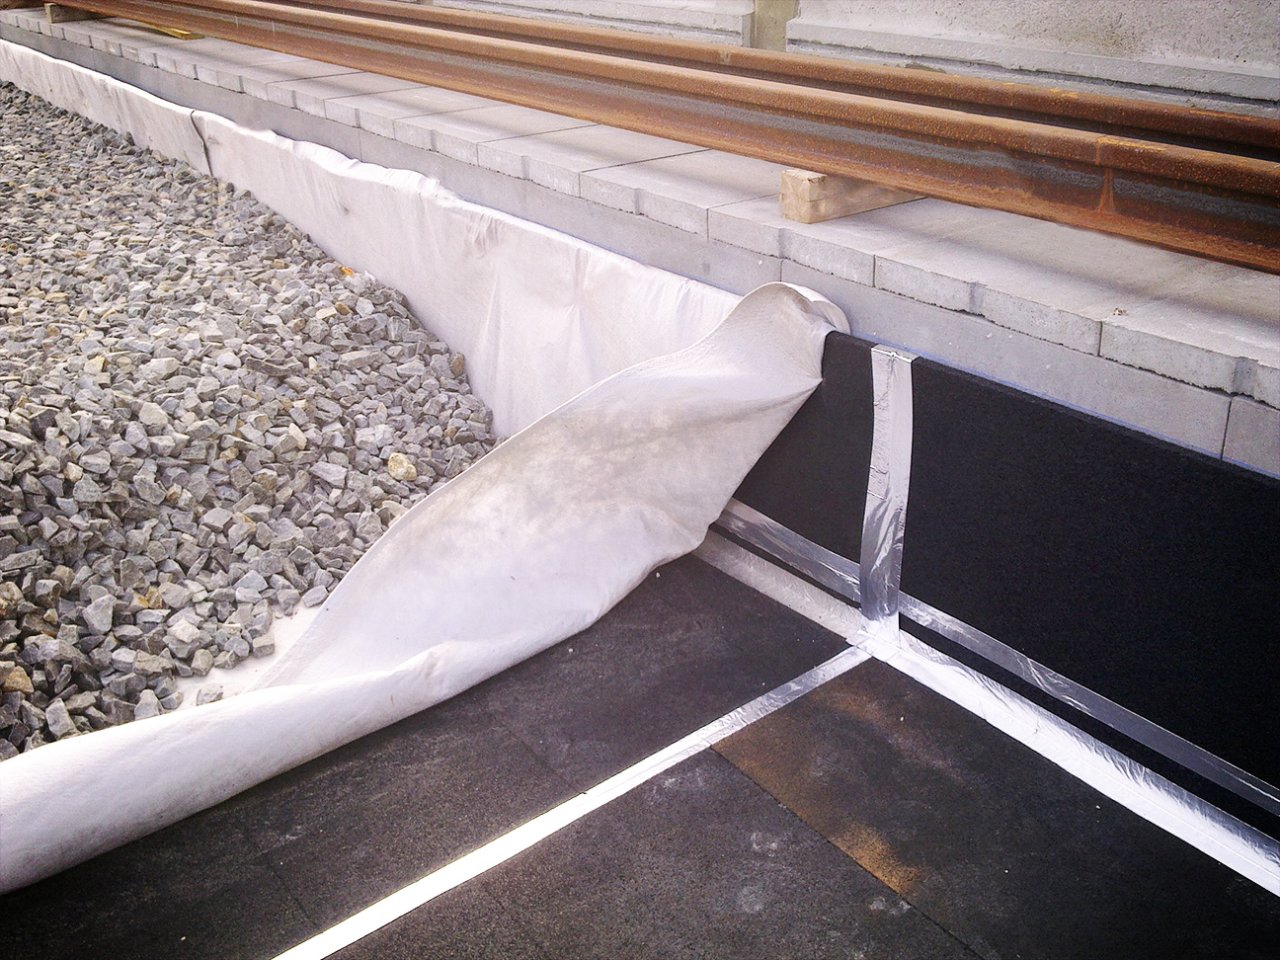 Kuva tärinänvaimennusmateriaaleista valmistetuista matoista, jotka on levitetty painolastin alle junien uutta kiskoa asennettaessa.